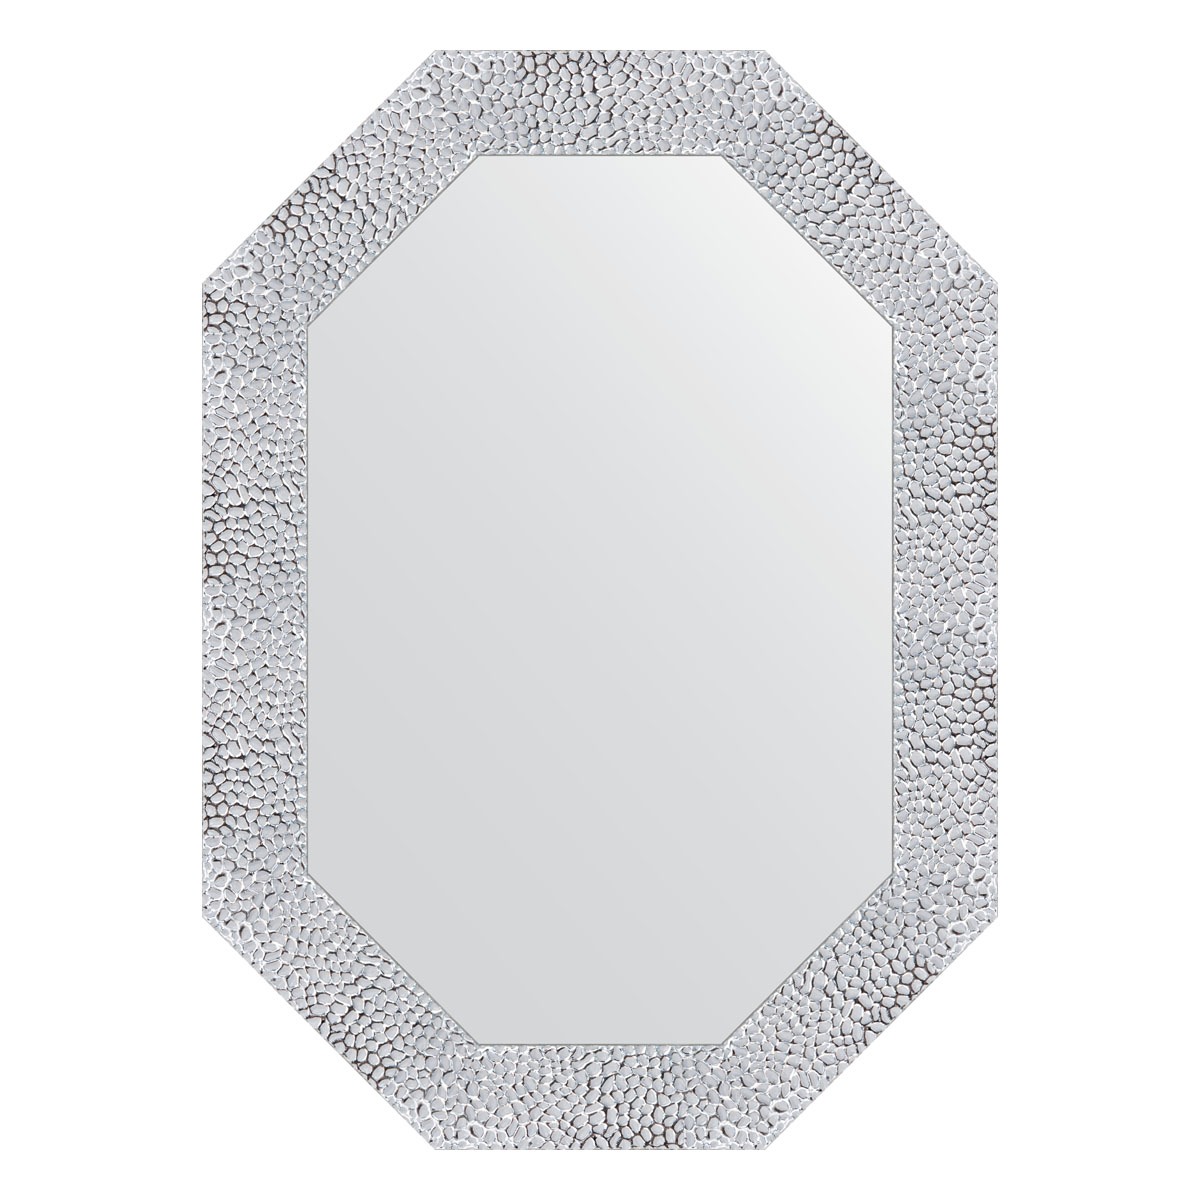 Зеркало в багетной раме Evoform чеканка белая 70 мм 52x72 см зеркало напольное в багетной раме чеканка белая 70 мм 108 x 197 см evoform